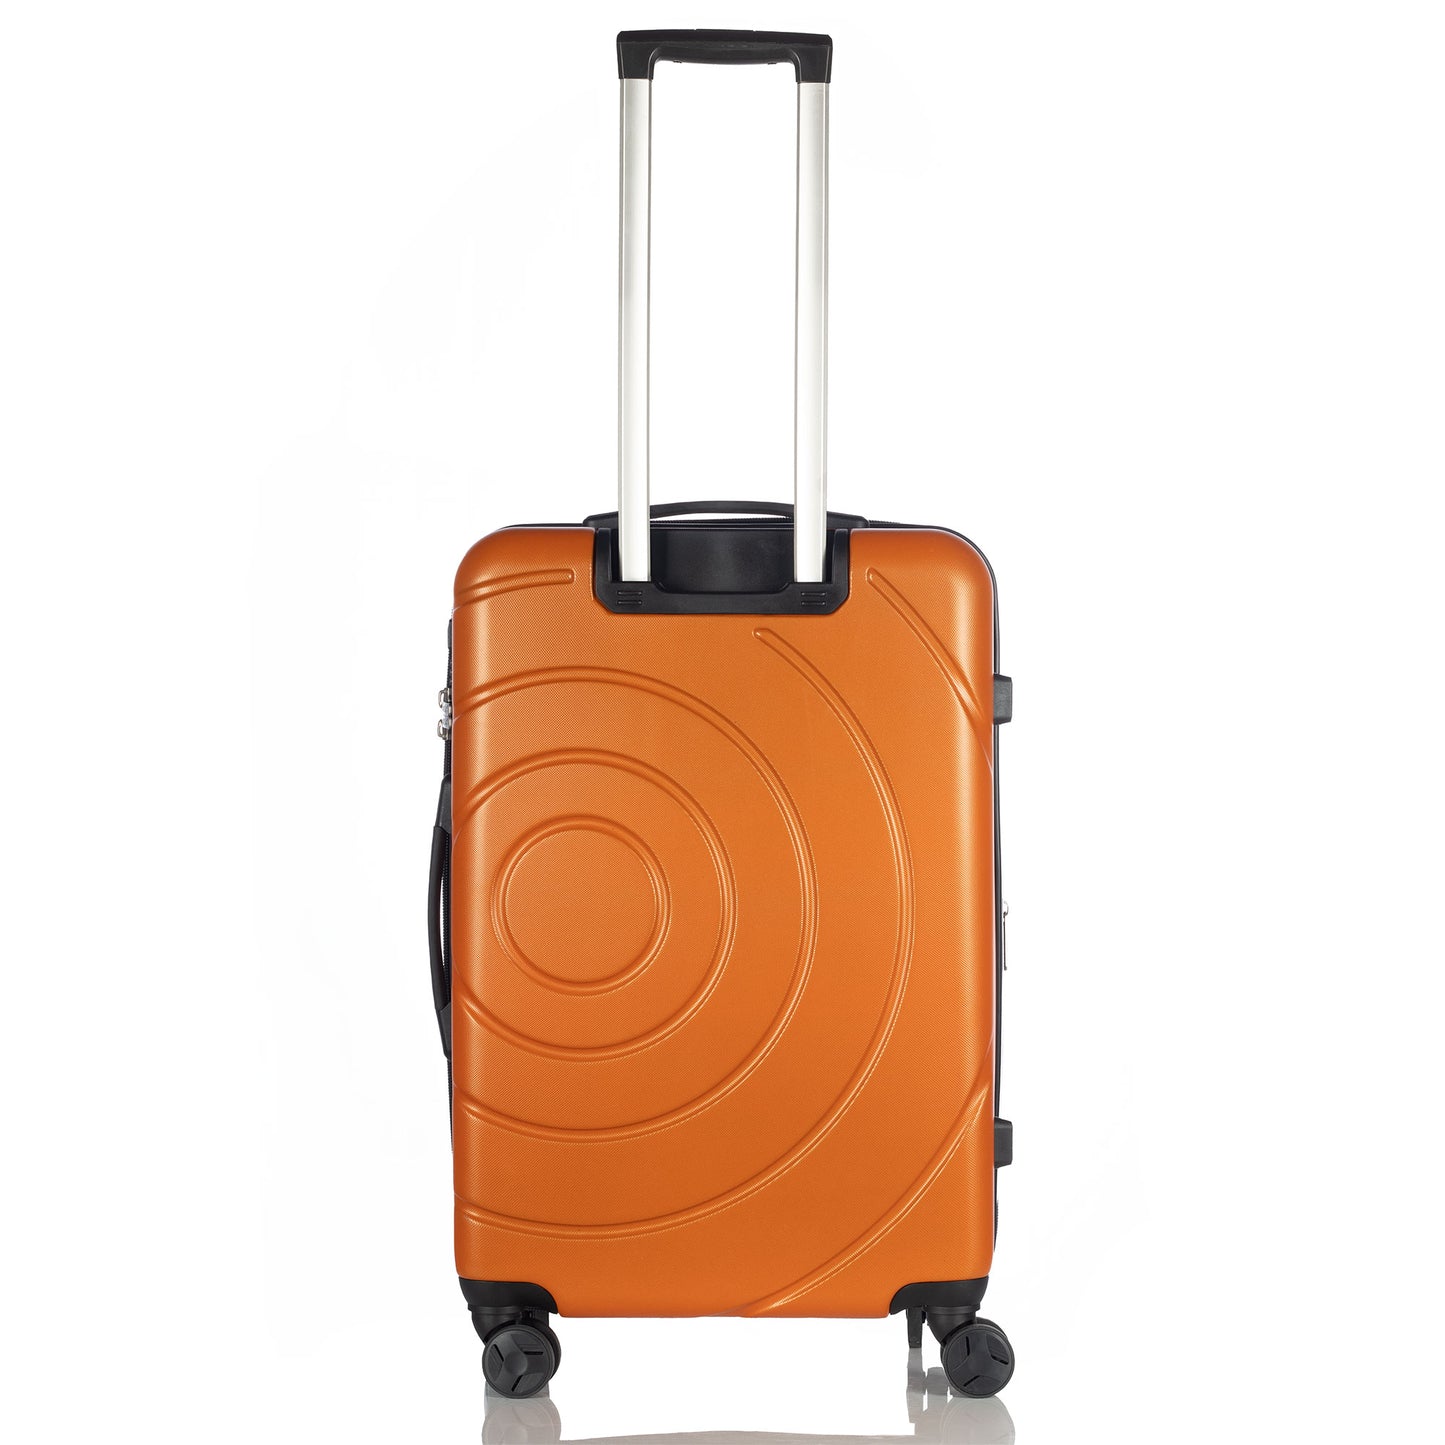 Hardhead Luggage (20/24/28") Eco Hardside Travel Suitcase with 4 360 Wheels Lock Included, Orange